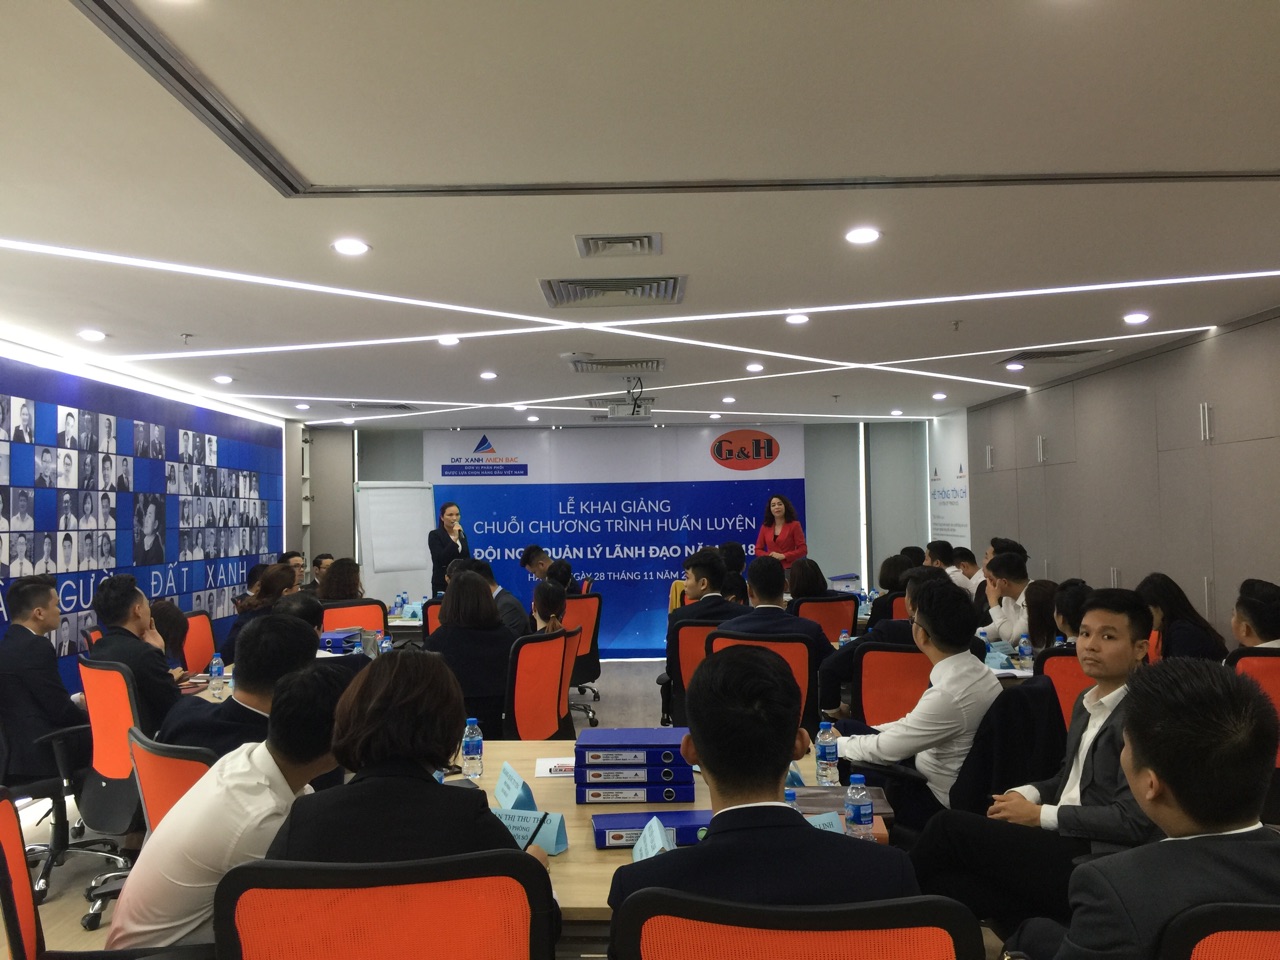 Giám đốc HCNS Nguyễn Thị Lệ Uyên phát biểu khai mạc chương trình